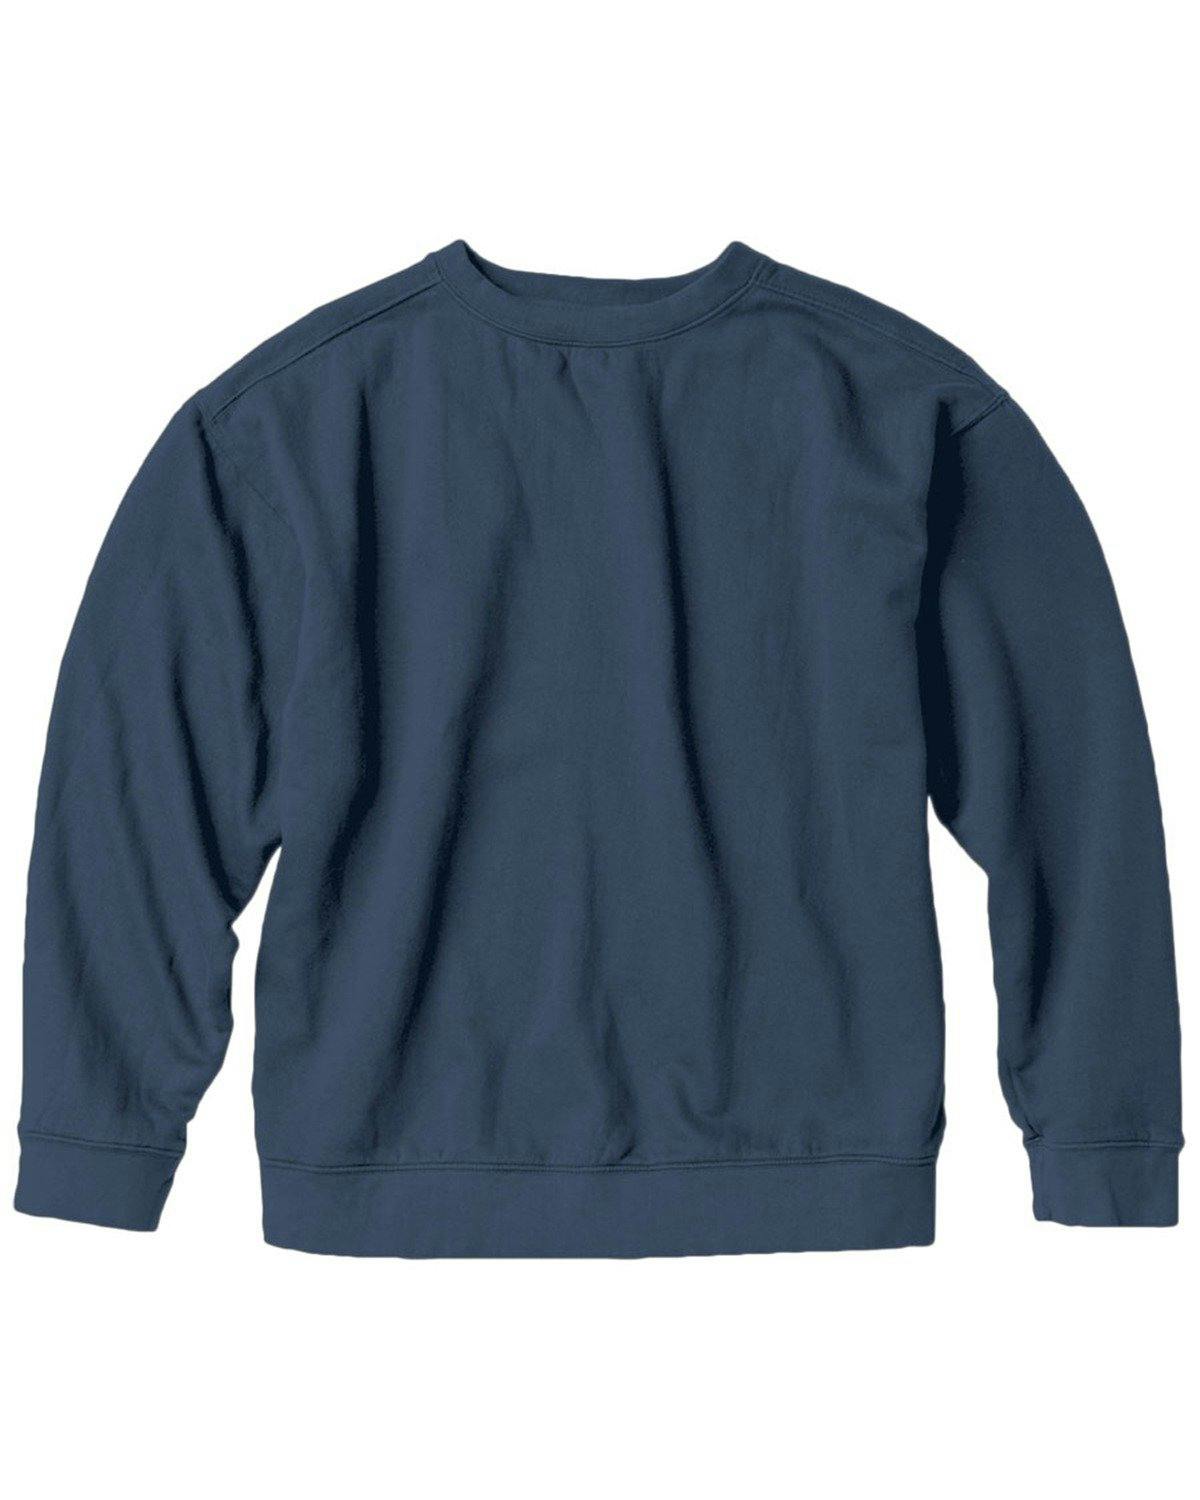 Image for Adult Crewneck Sweatshirt